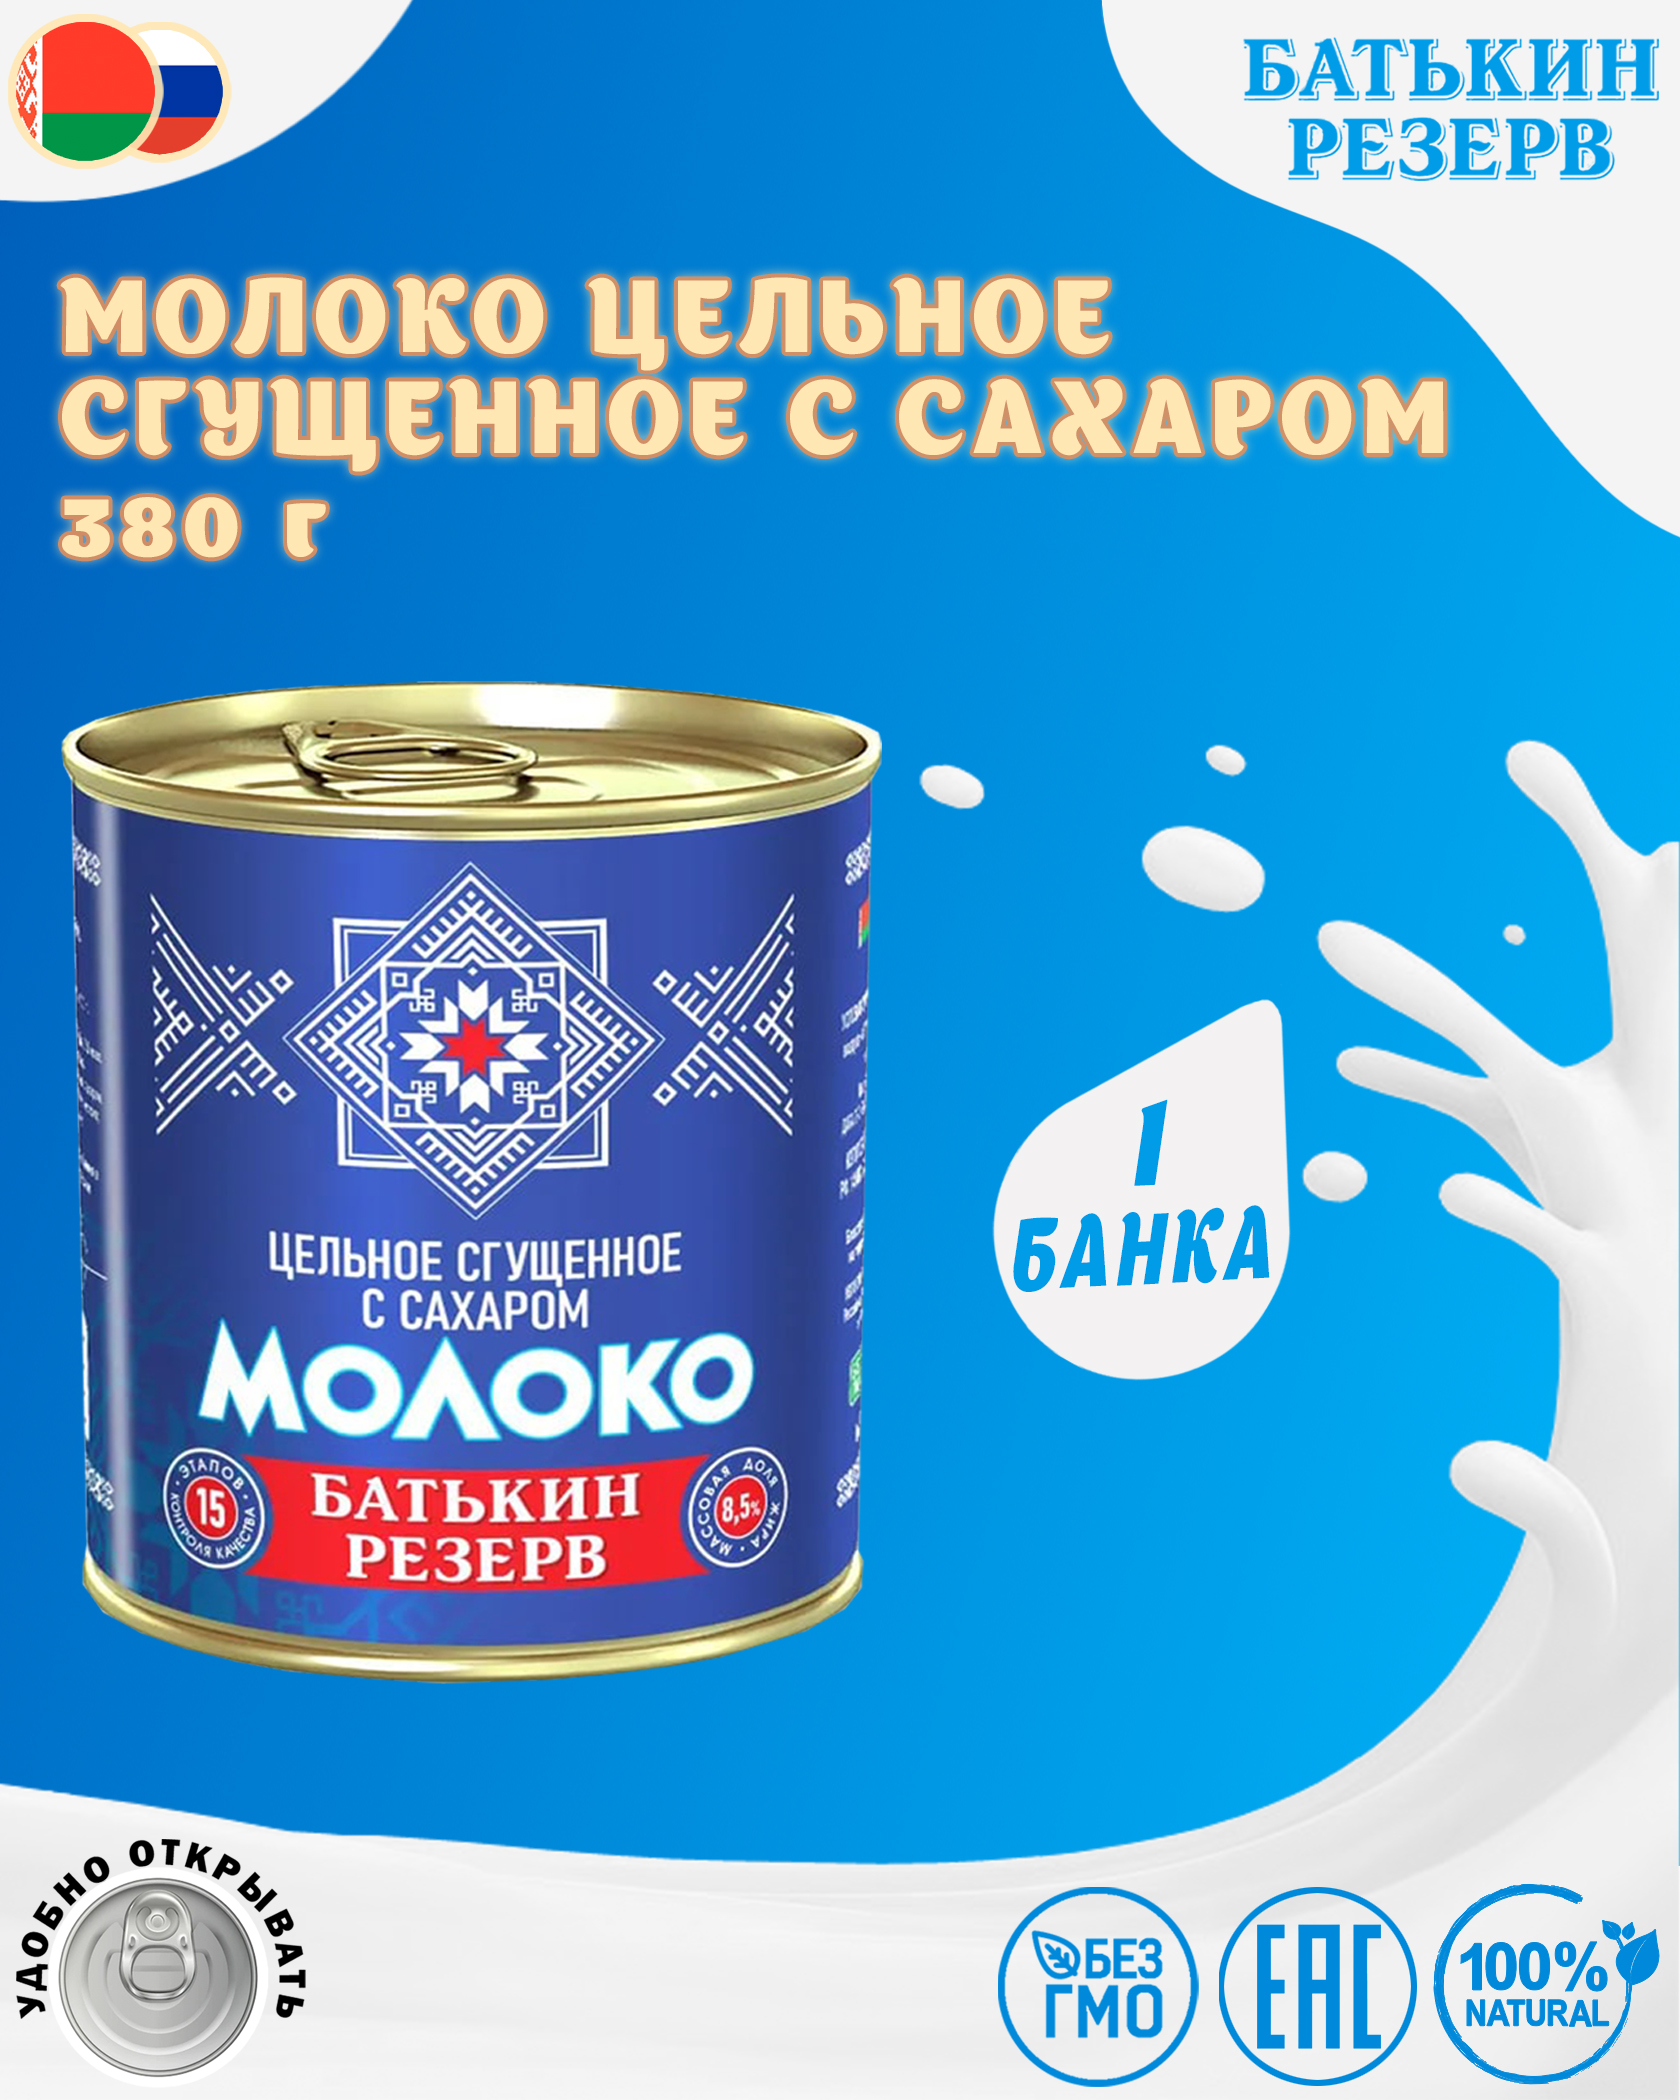 Молоко цельное сгущенное с сахаром, Батькин резерв, ГОСТ, 1 шт. по 380 г